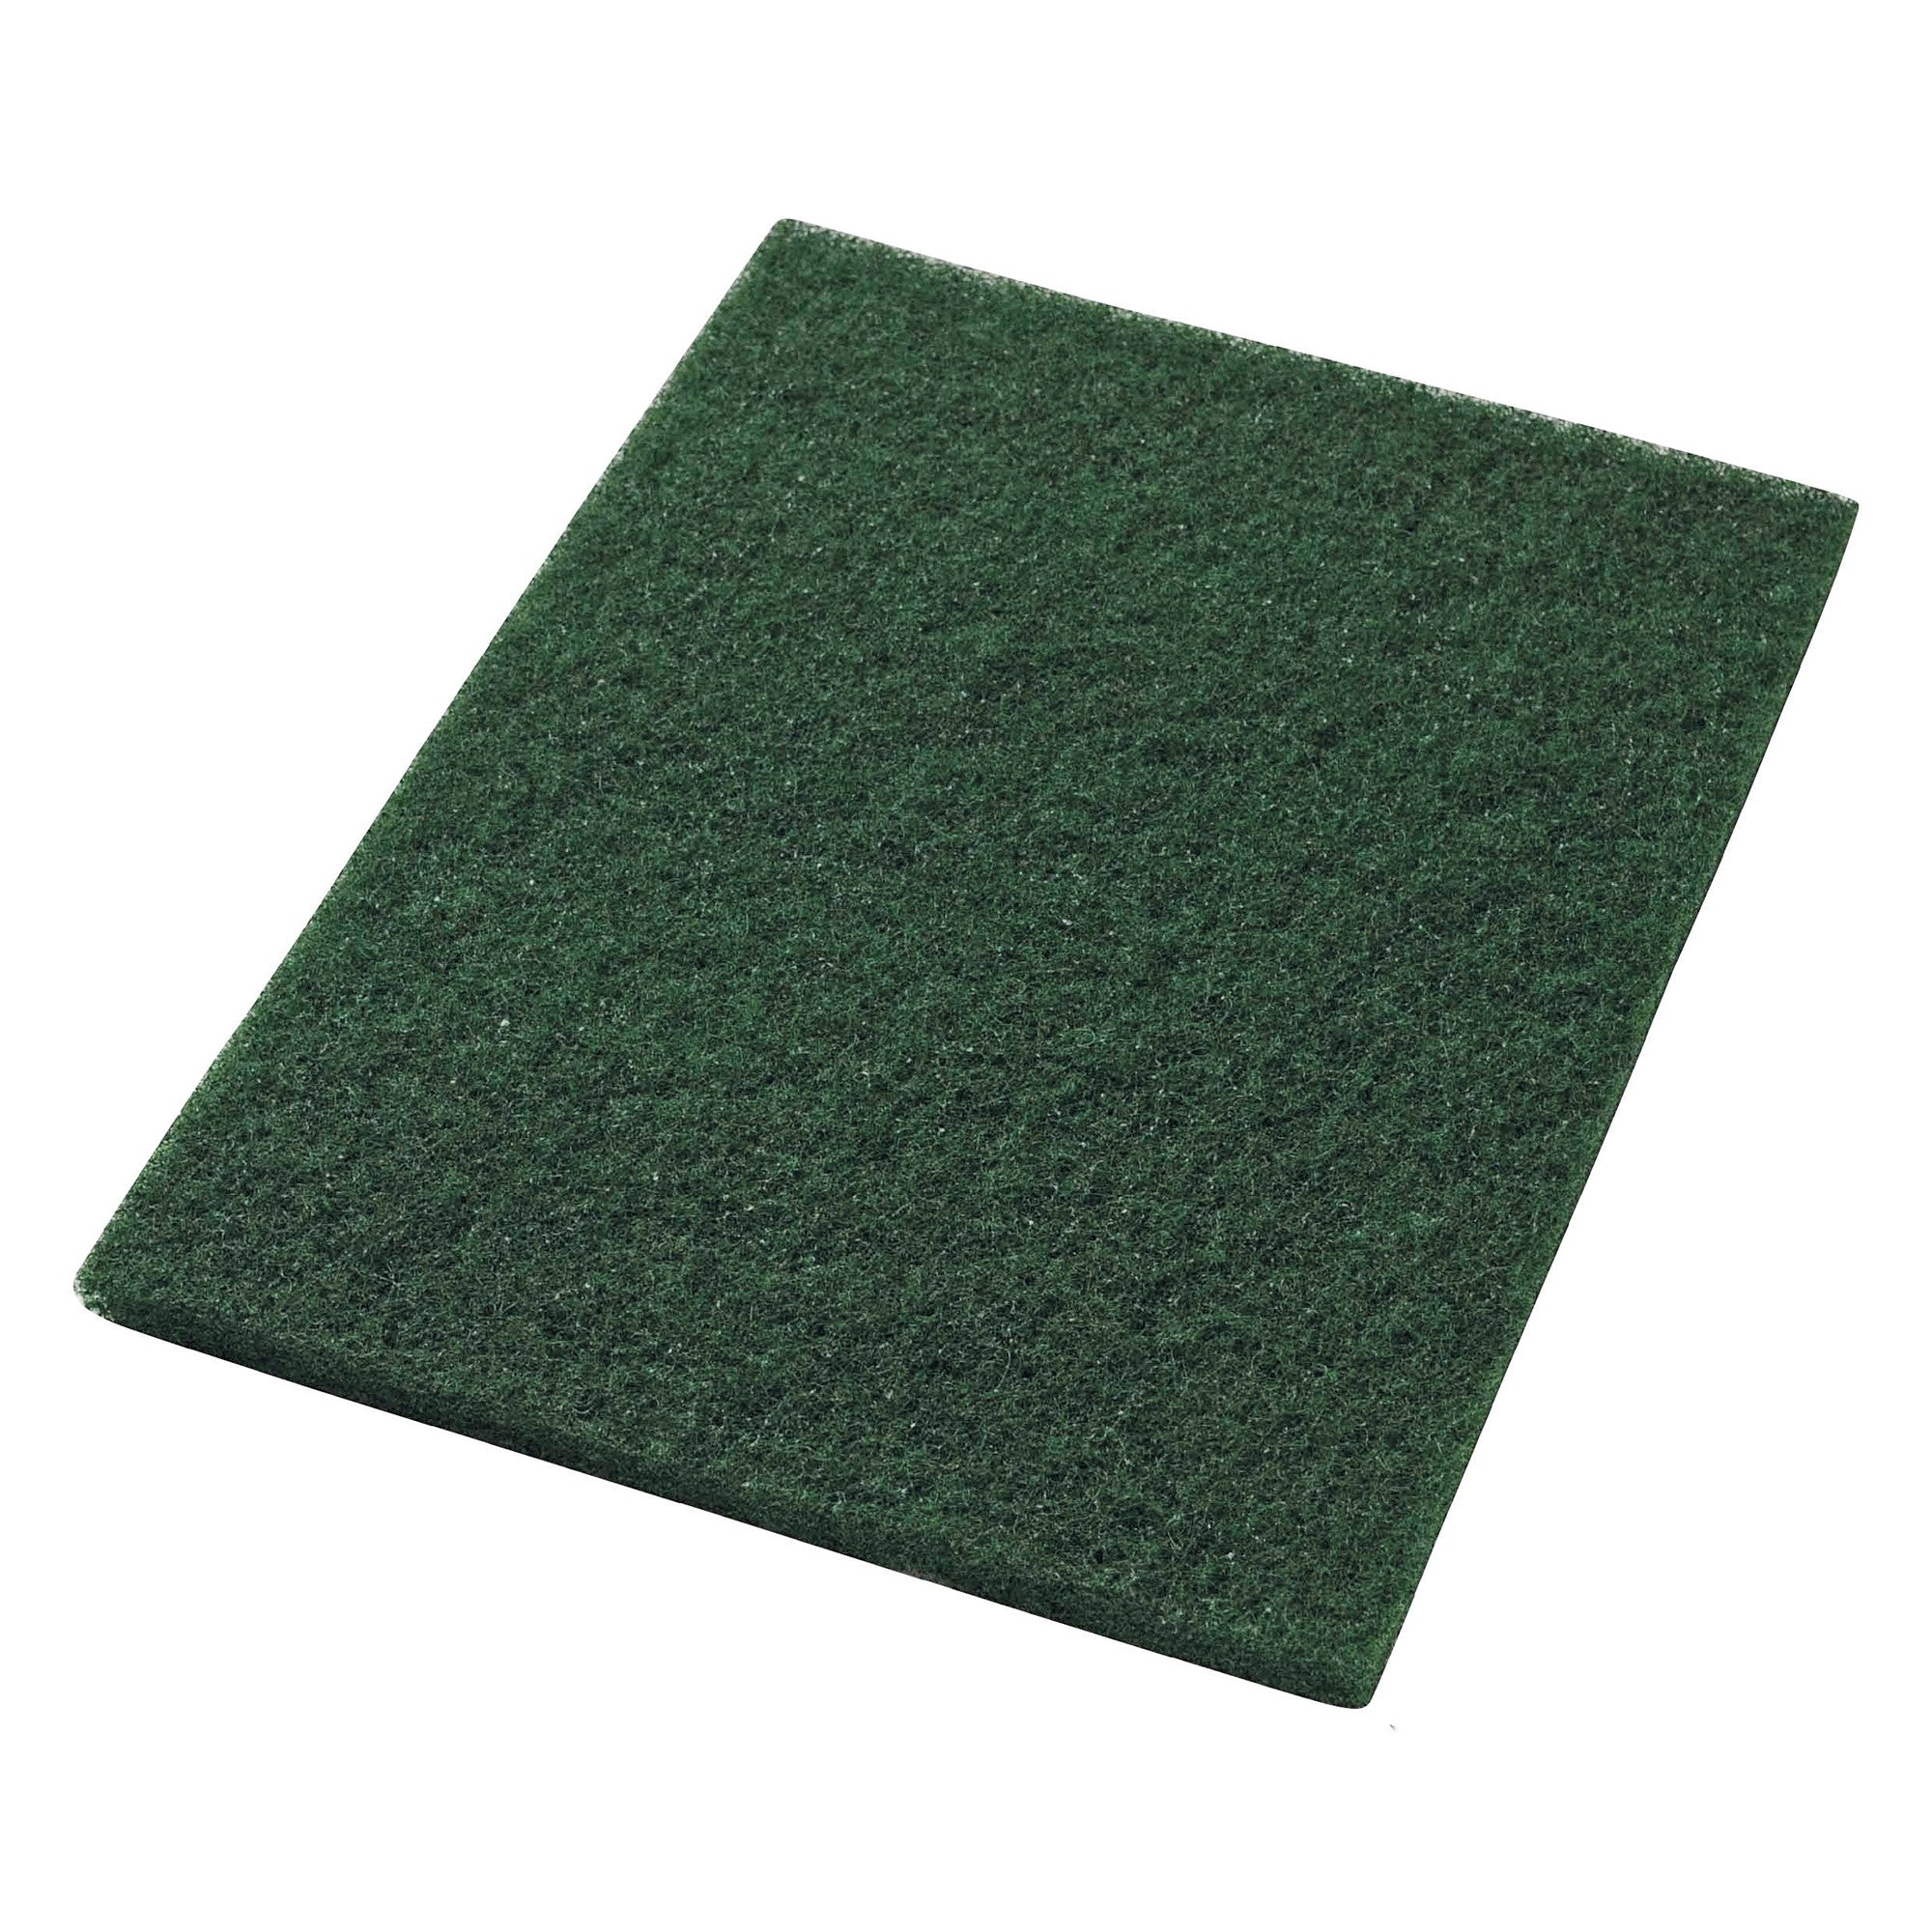 Pad grün, 350x500 mm, Nylon